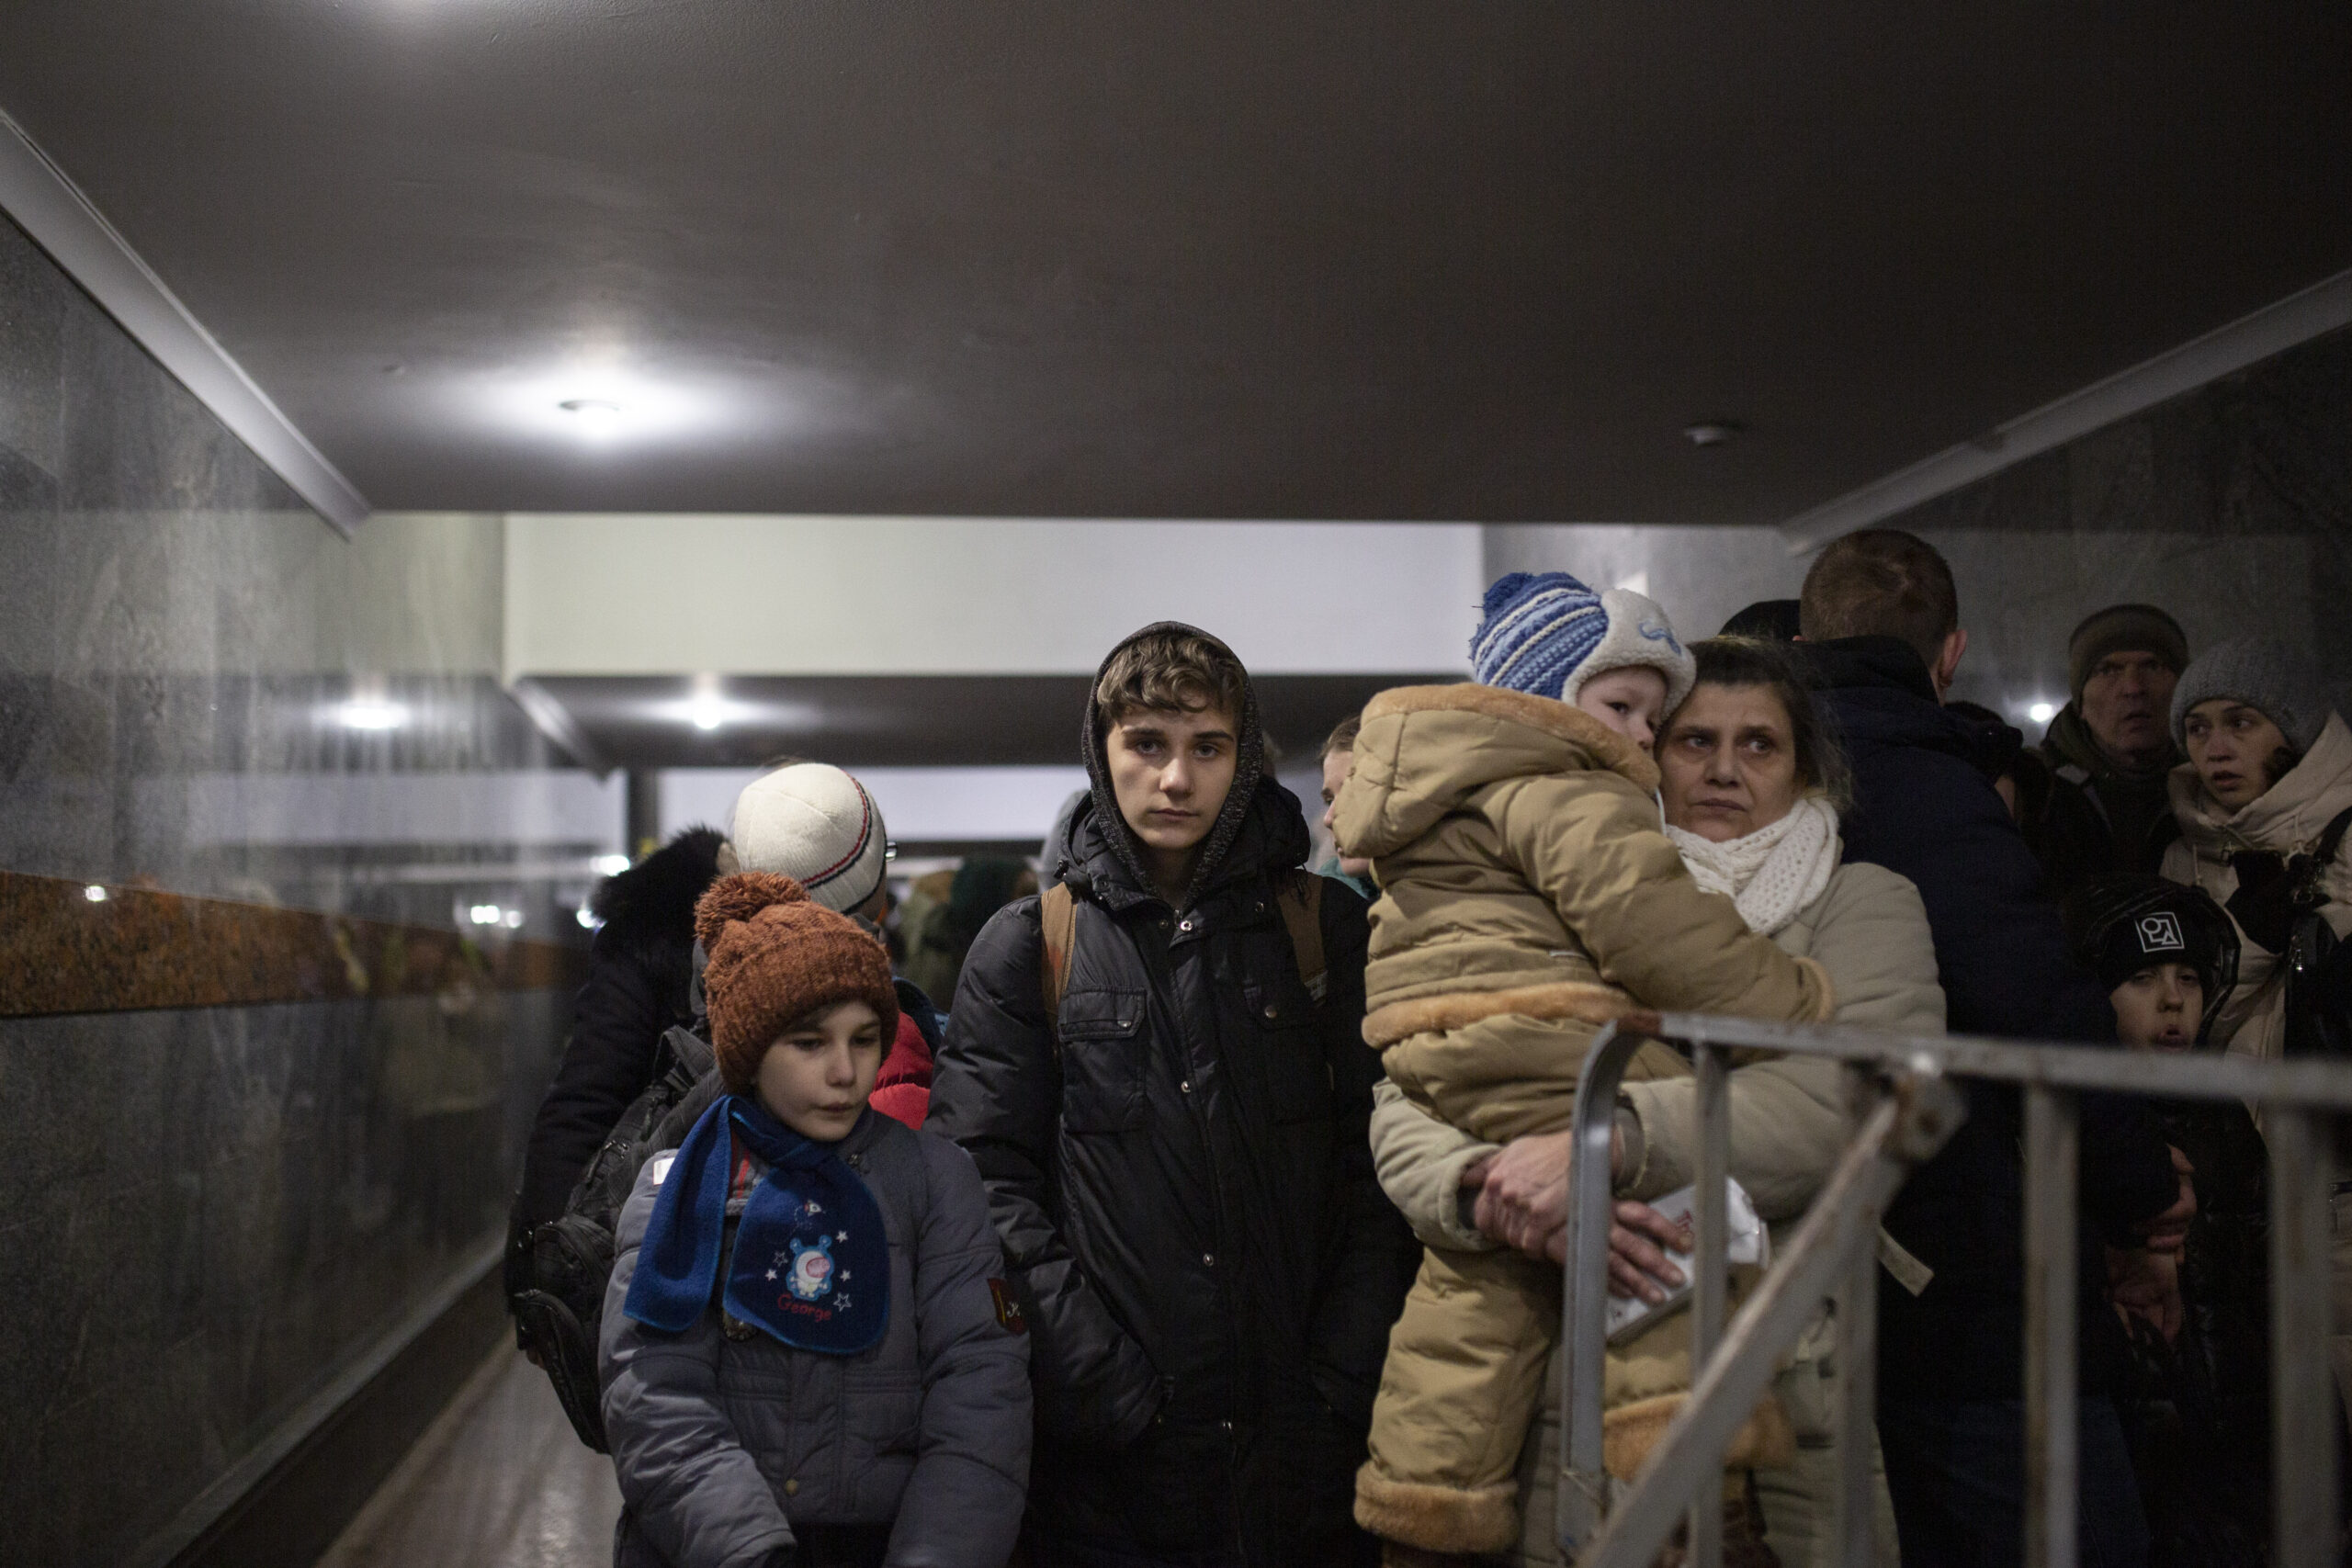 Olena Kyrganska tiene in braccio il suo bambino mentre aspetta con la sua famiglia un treno per Przemysl, in Polonia. Viene da Kharkiv. La famiglia ha deciso di scappare dopo che l'elettricità e l'acqua sono state tagliate. Sono arrivati a Leopoli 2 giorni fa, sono esausti e stanchi di sentirsi in pericolo. Sperano di poter raggiungere alcuni parenti in Germania. © UNHCR/Valerio Muscella